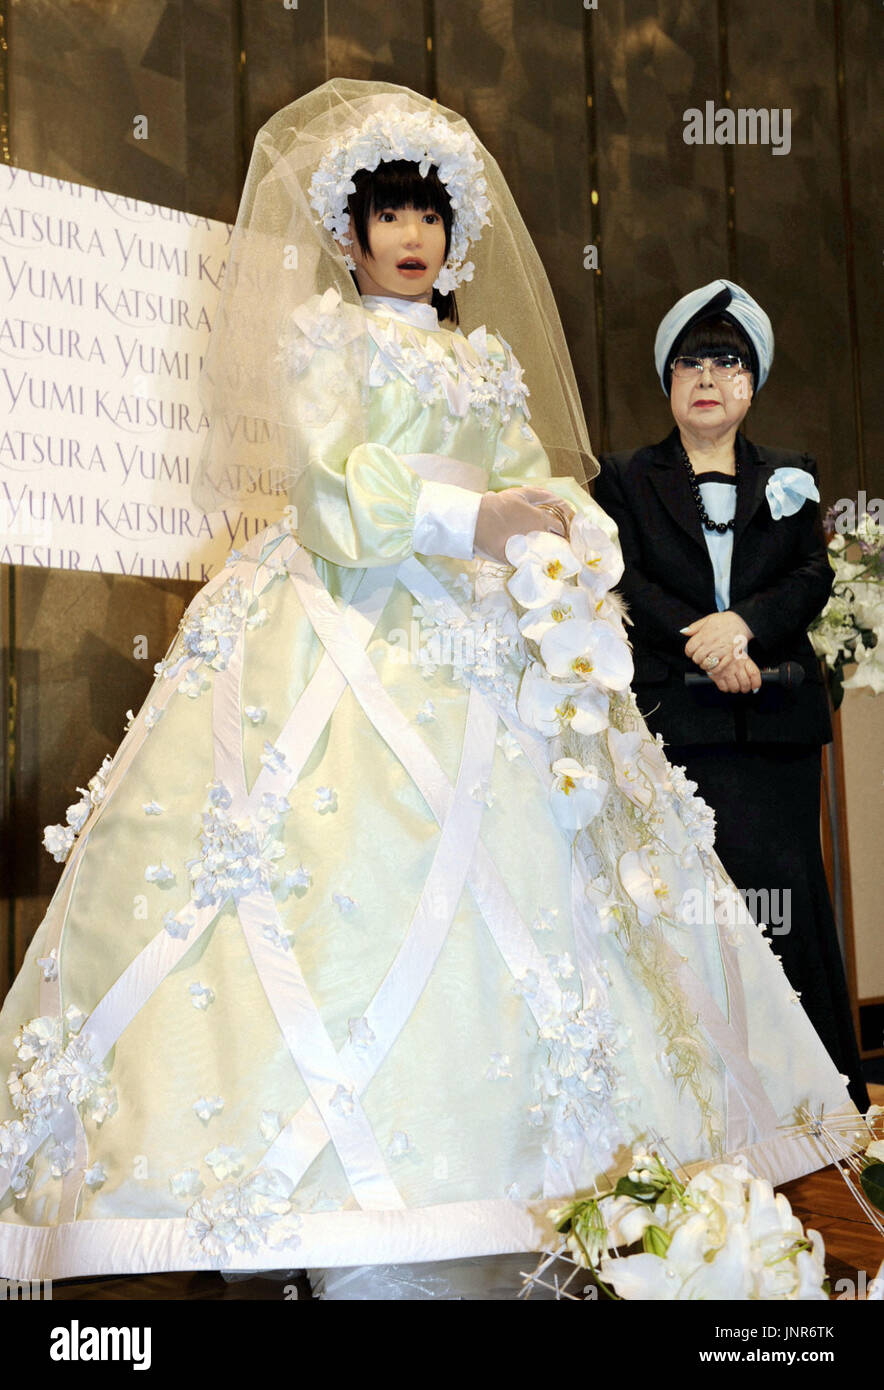 OSAKA, Giappone - Un HRP-4C (L), un ''femminile "' robot umanoide sviluppato da un istituto nazionale, e ben noto nuziale giapponese stilista Yumi Katsura (R) posa per fotografi in luglio 22. Il robot ha camminato su una passerella come un modello per abiti da sposa progettati da Katsura nel suo spettacolo presso un hotel di Osaka il 22 luglio. (Kyodo) Foto Stock